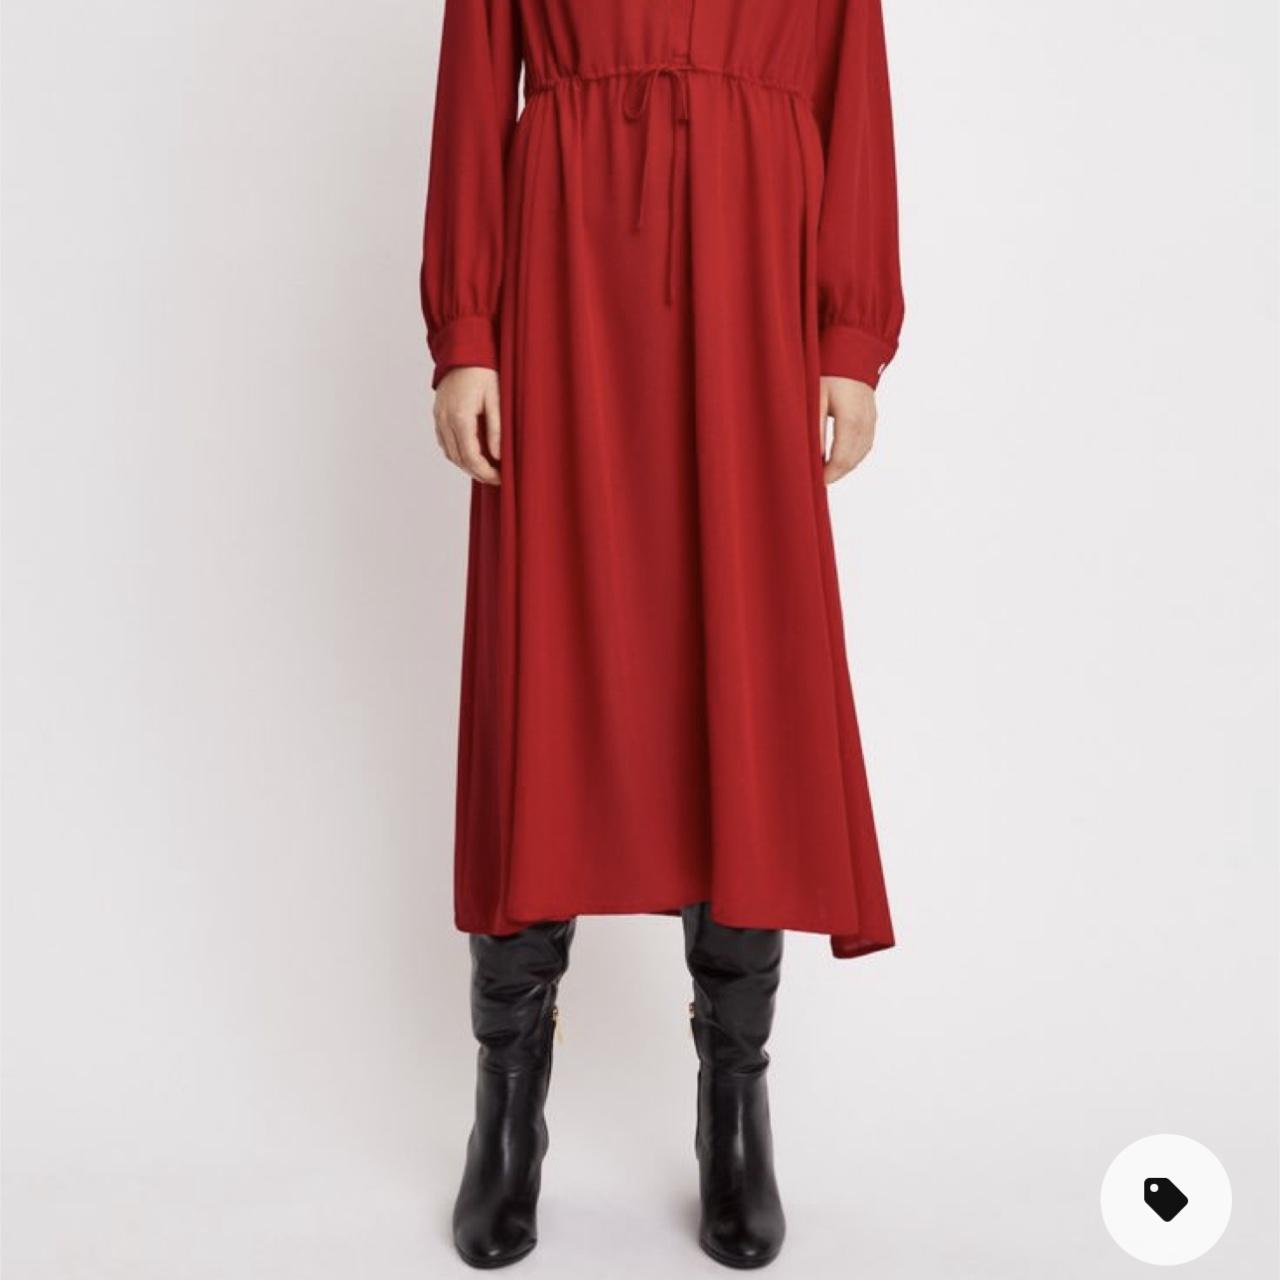 Filippa K Women's Red Dress